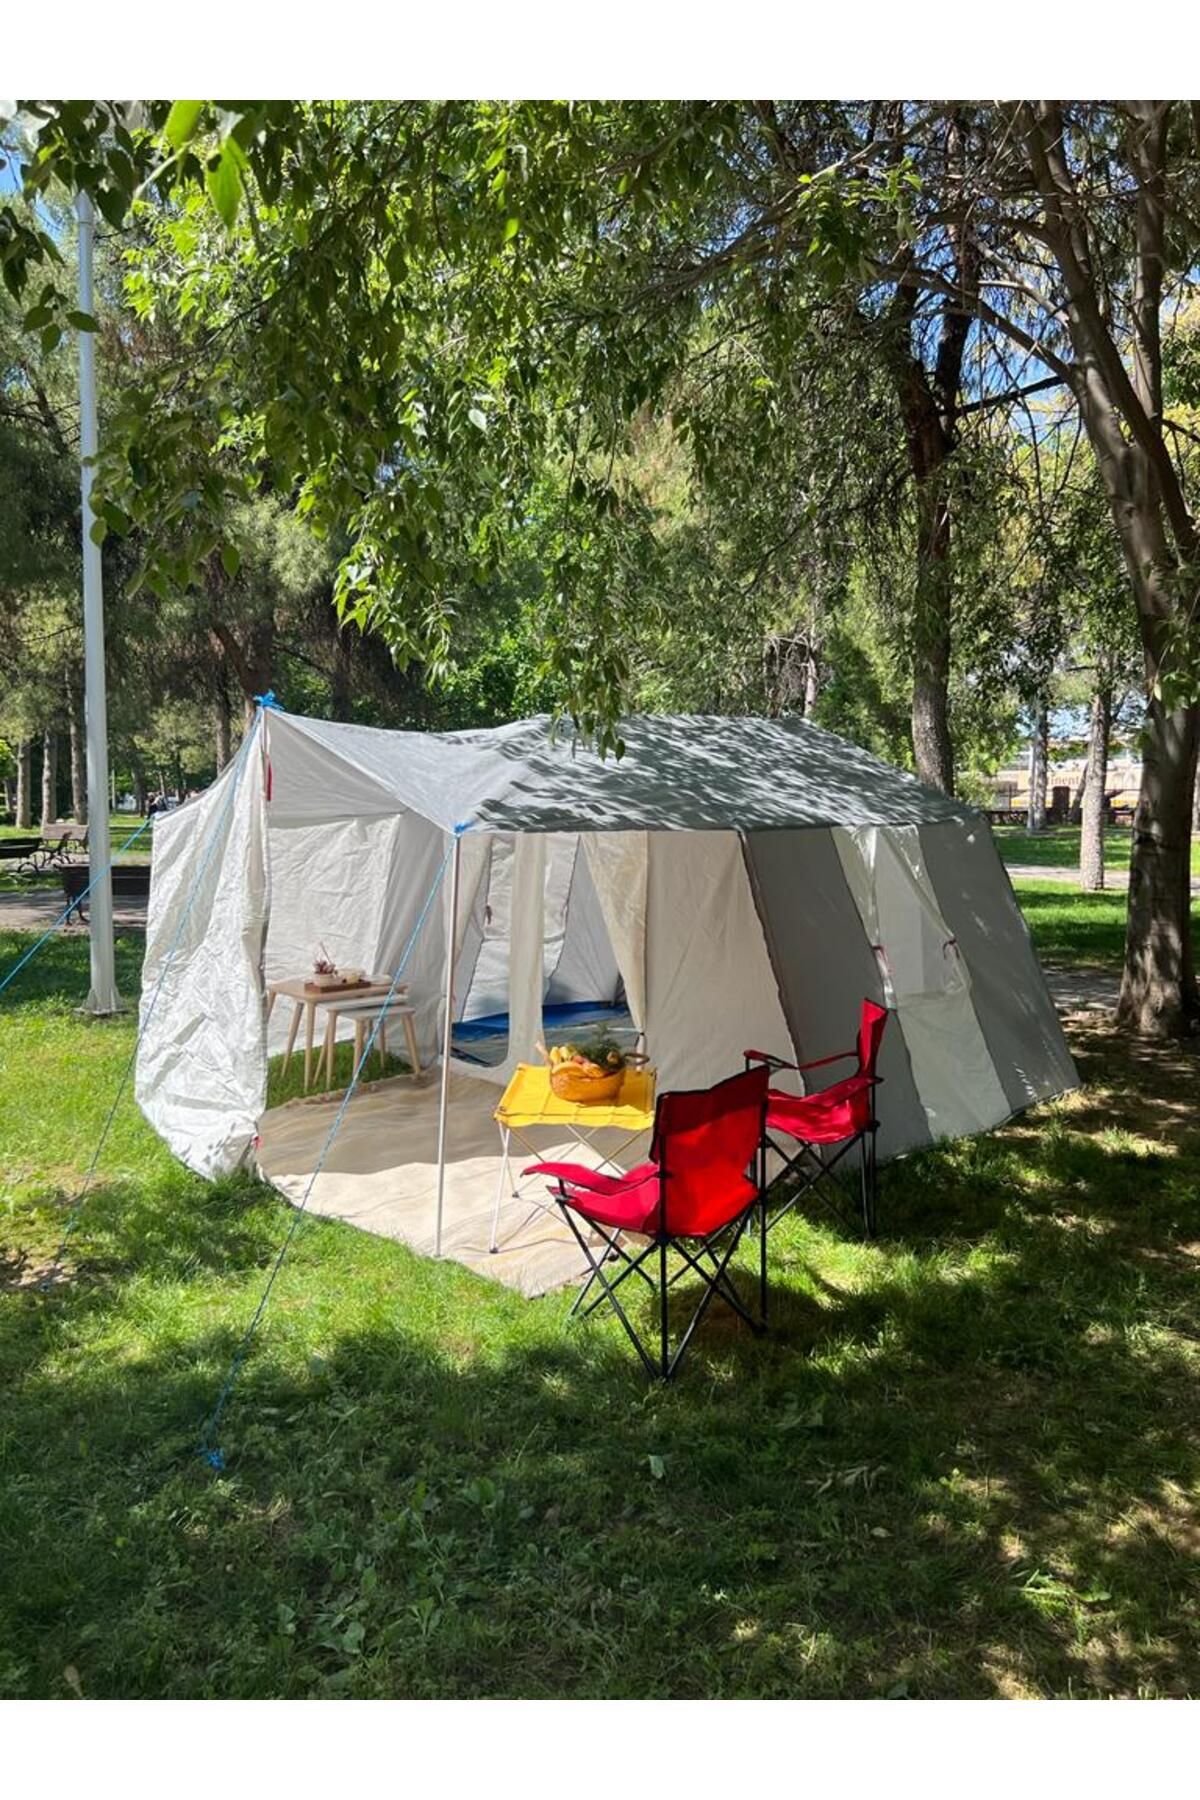 yamaç çadır Gri Renginde Mutfaklı Ve Kapıda Sinekliklim Geniş Ferah Kamp Çadırları